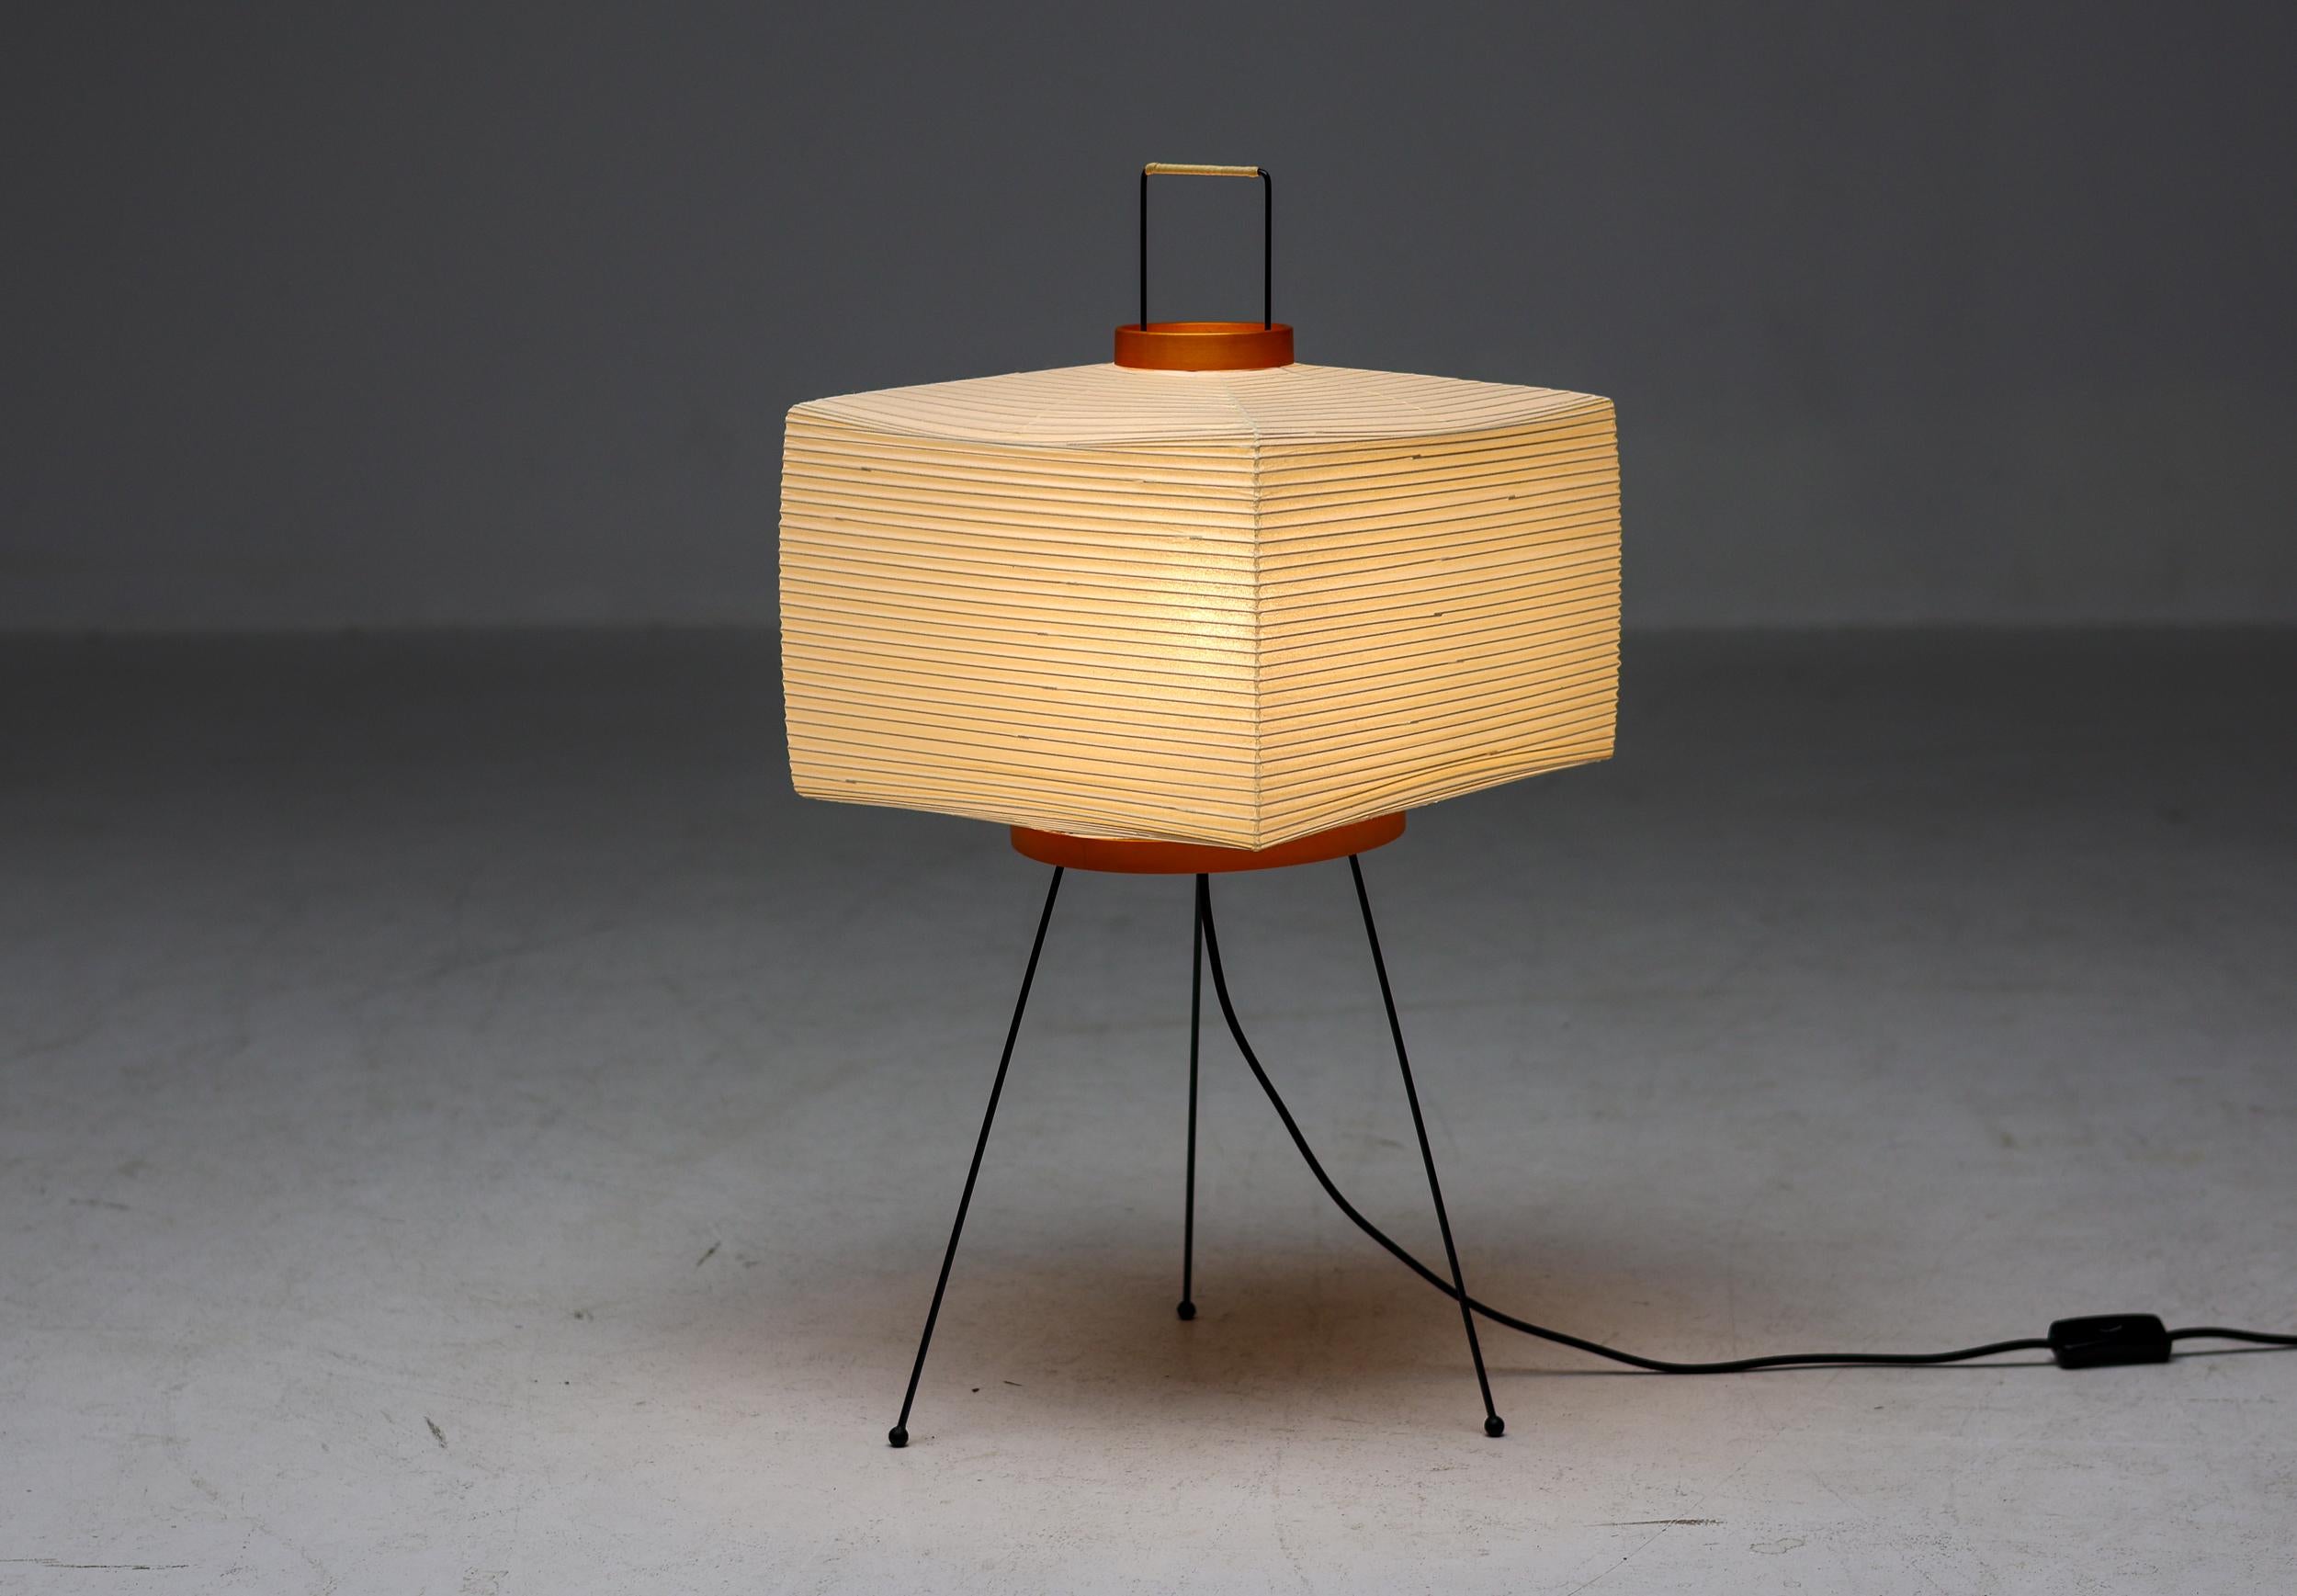 Numéro de modèle 7A lampe de table ou lampadaire par Isamu Noguchi pour Akari. 
Version originale fabriquée par Ozeki & co au Japon. 
Papier de riz, métal émaillé. Le fabricant a conservé le cachet d'origine, la boîte d'origine est